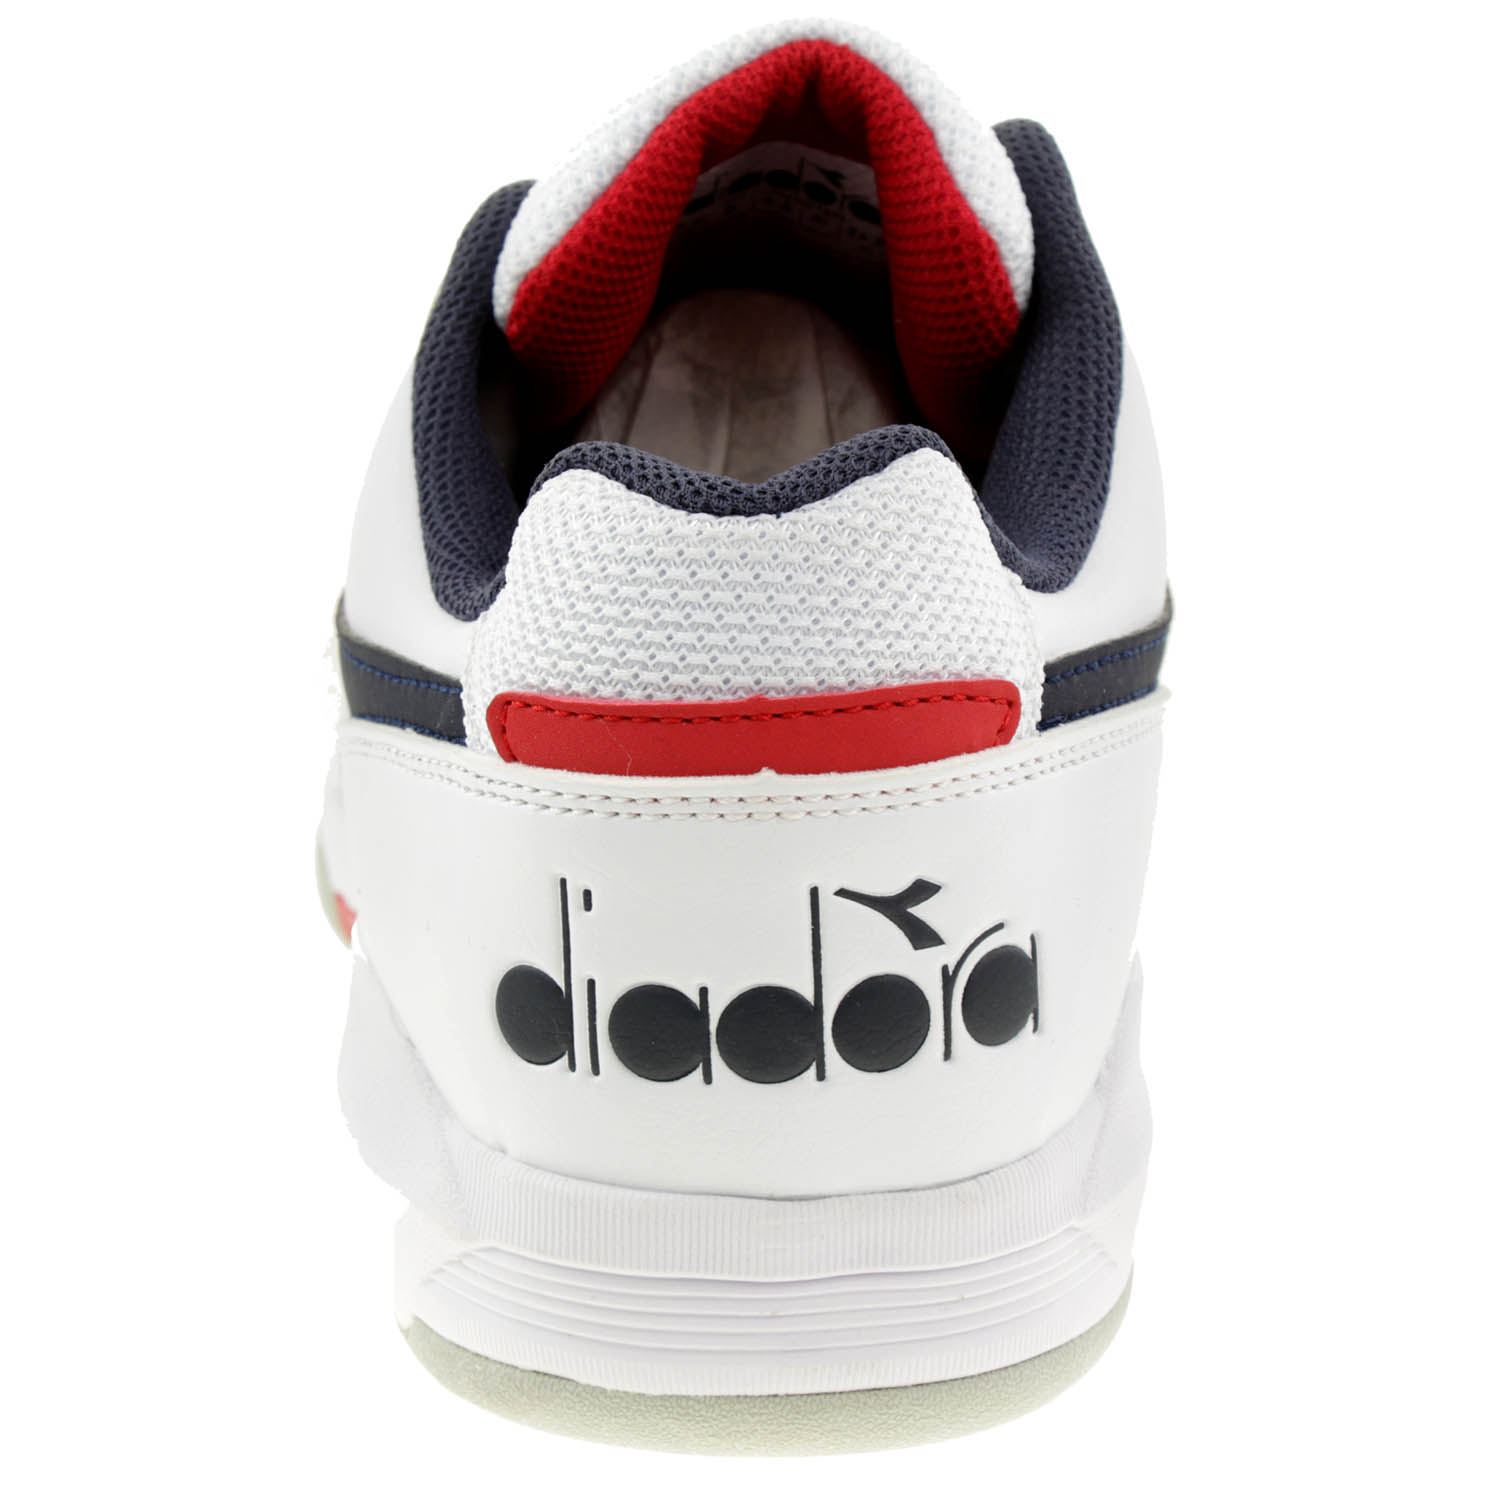 Diadora Unisex S. Challenge 3 SL Carpet Tennisschuhe Sneaker 101.177945 Weiß